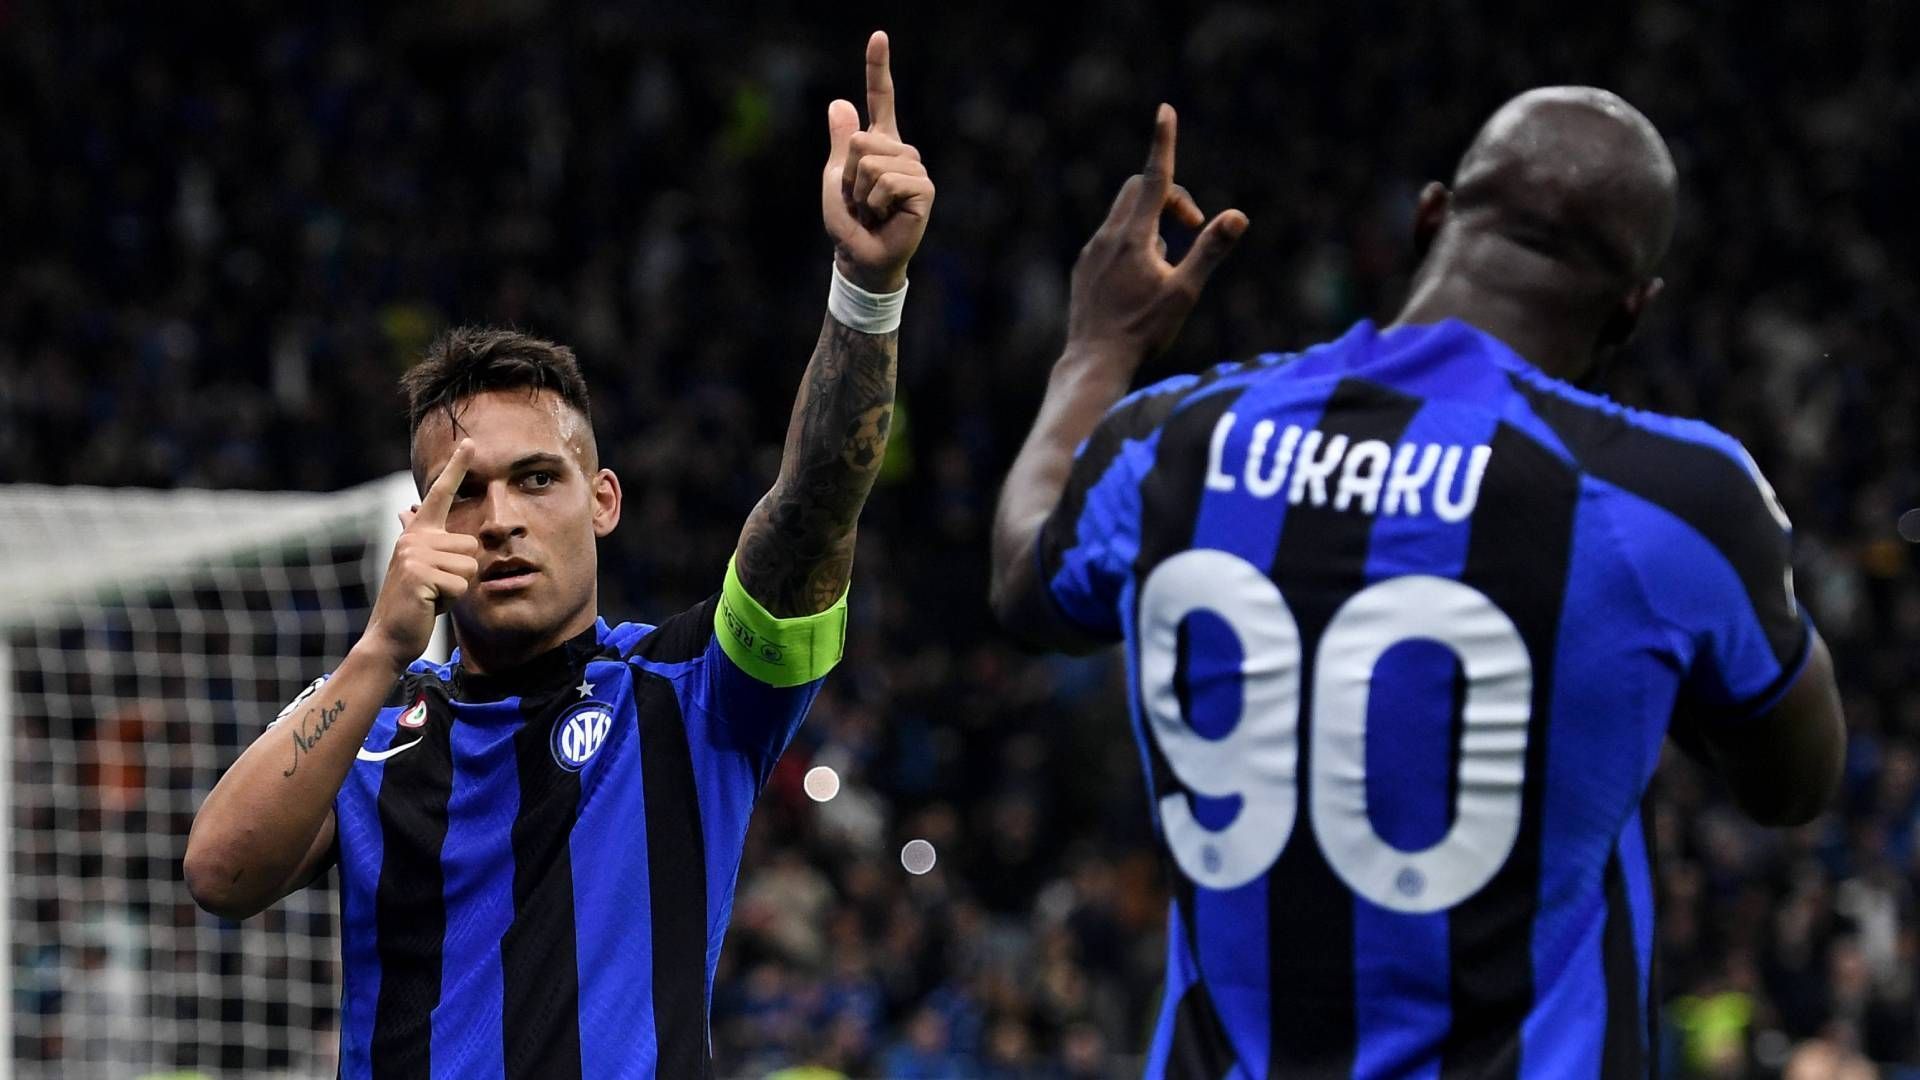 
                <strong>Inter schaltet Milan aus: Die Pressestimmen zum CL-Derby</strong><br>
                Inter Mailand hat es geschafft und steht erstmals seit 13 Jahren wieder im Champions-League-Finale. Nach dem 2:0-Sieg im Hinspiel gelang den Nerazzurri auch im Rückspiel ein Sieg gegen den Stadtrivalen AC Mailand. Das goldene Tor zum 1:0-Erfolg schoss Lautaro Martinez. ran hat die Pressestimmen gesammelt.
              